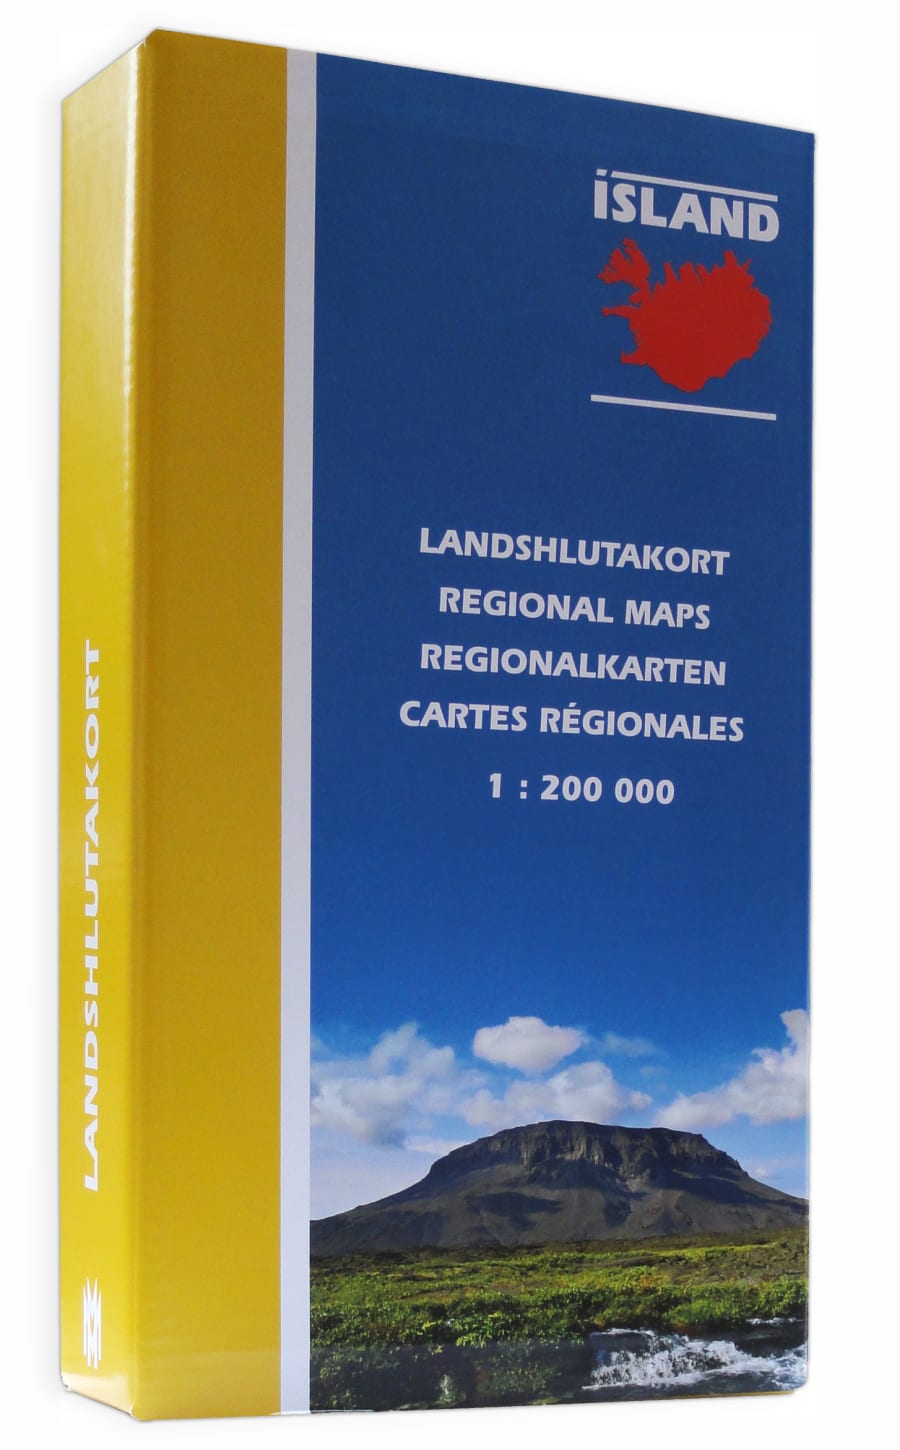 Landshlutakort 1: 200 000 - gjafaaskja / Regional Maps